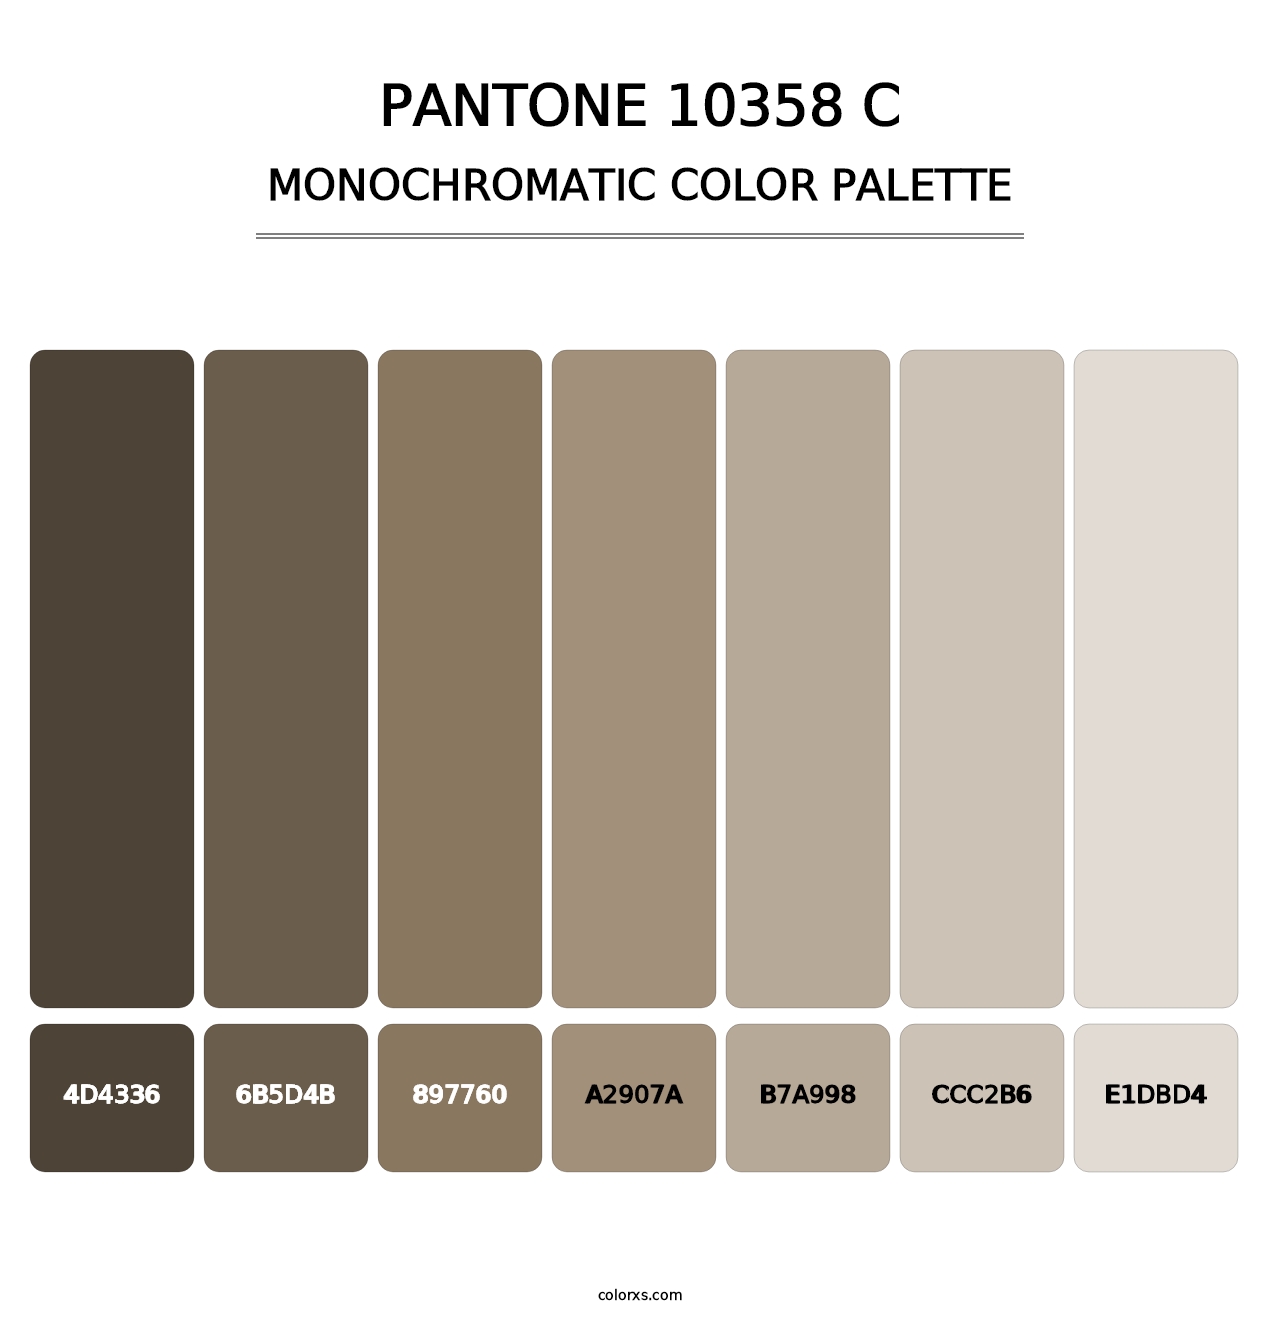 PANTONE 10358 C - Monochromatic Color Palette